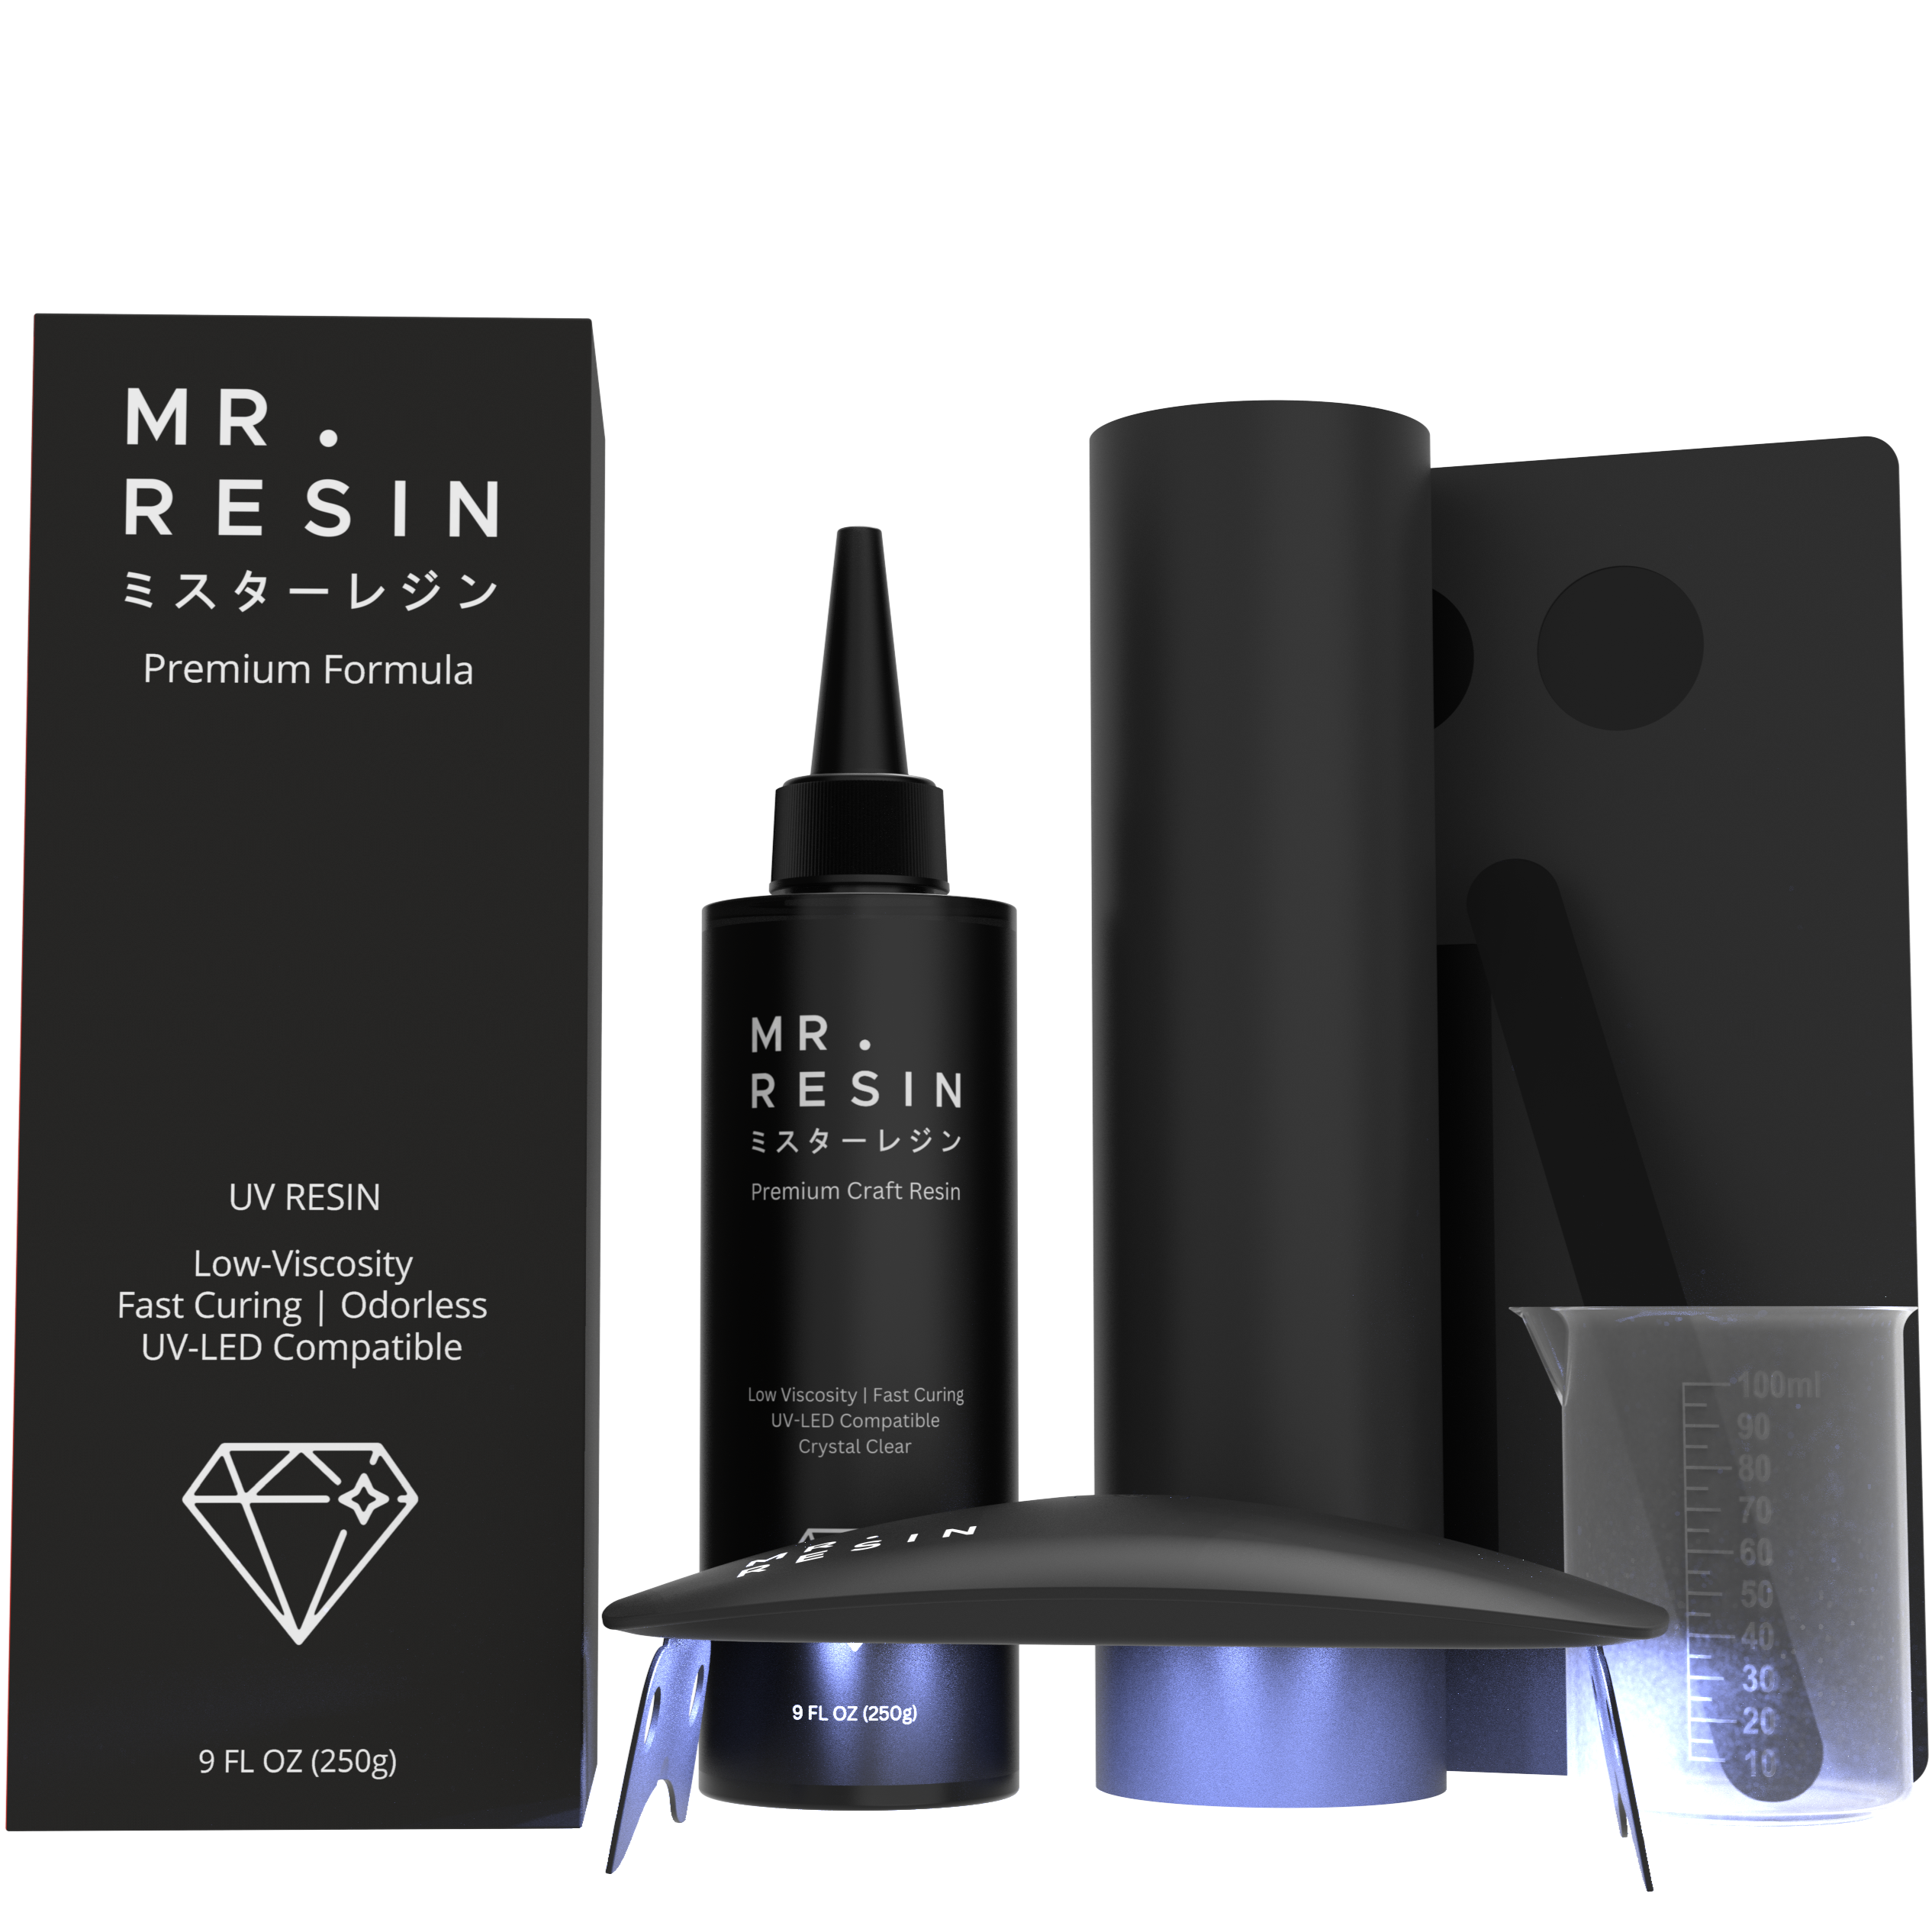 MR. RESIN Black Line New Formula! - (250g Kit)